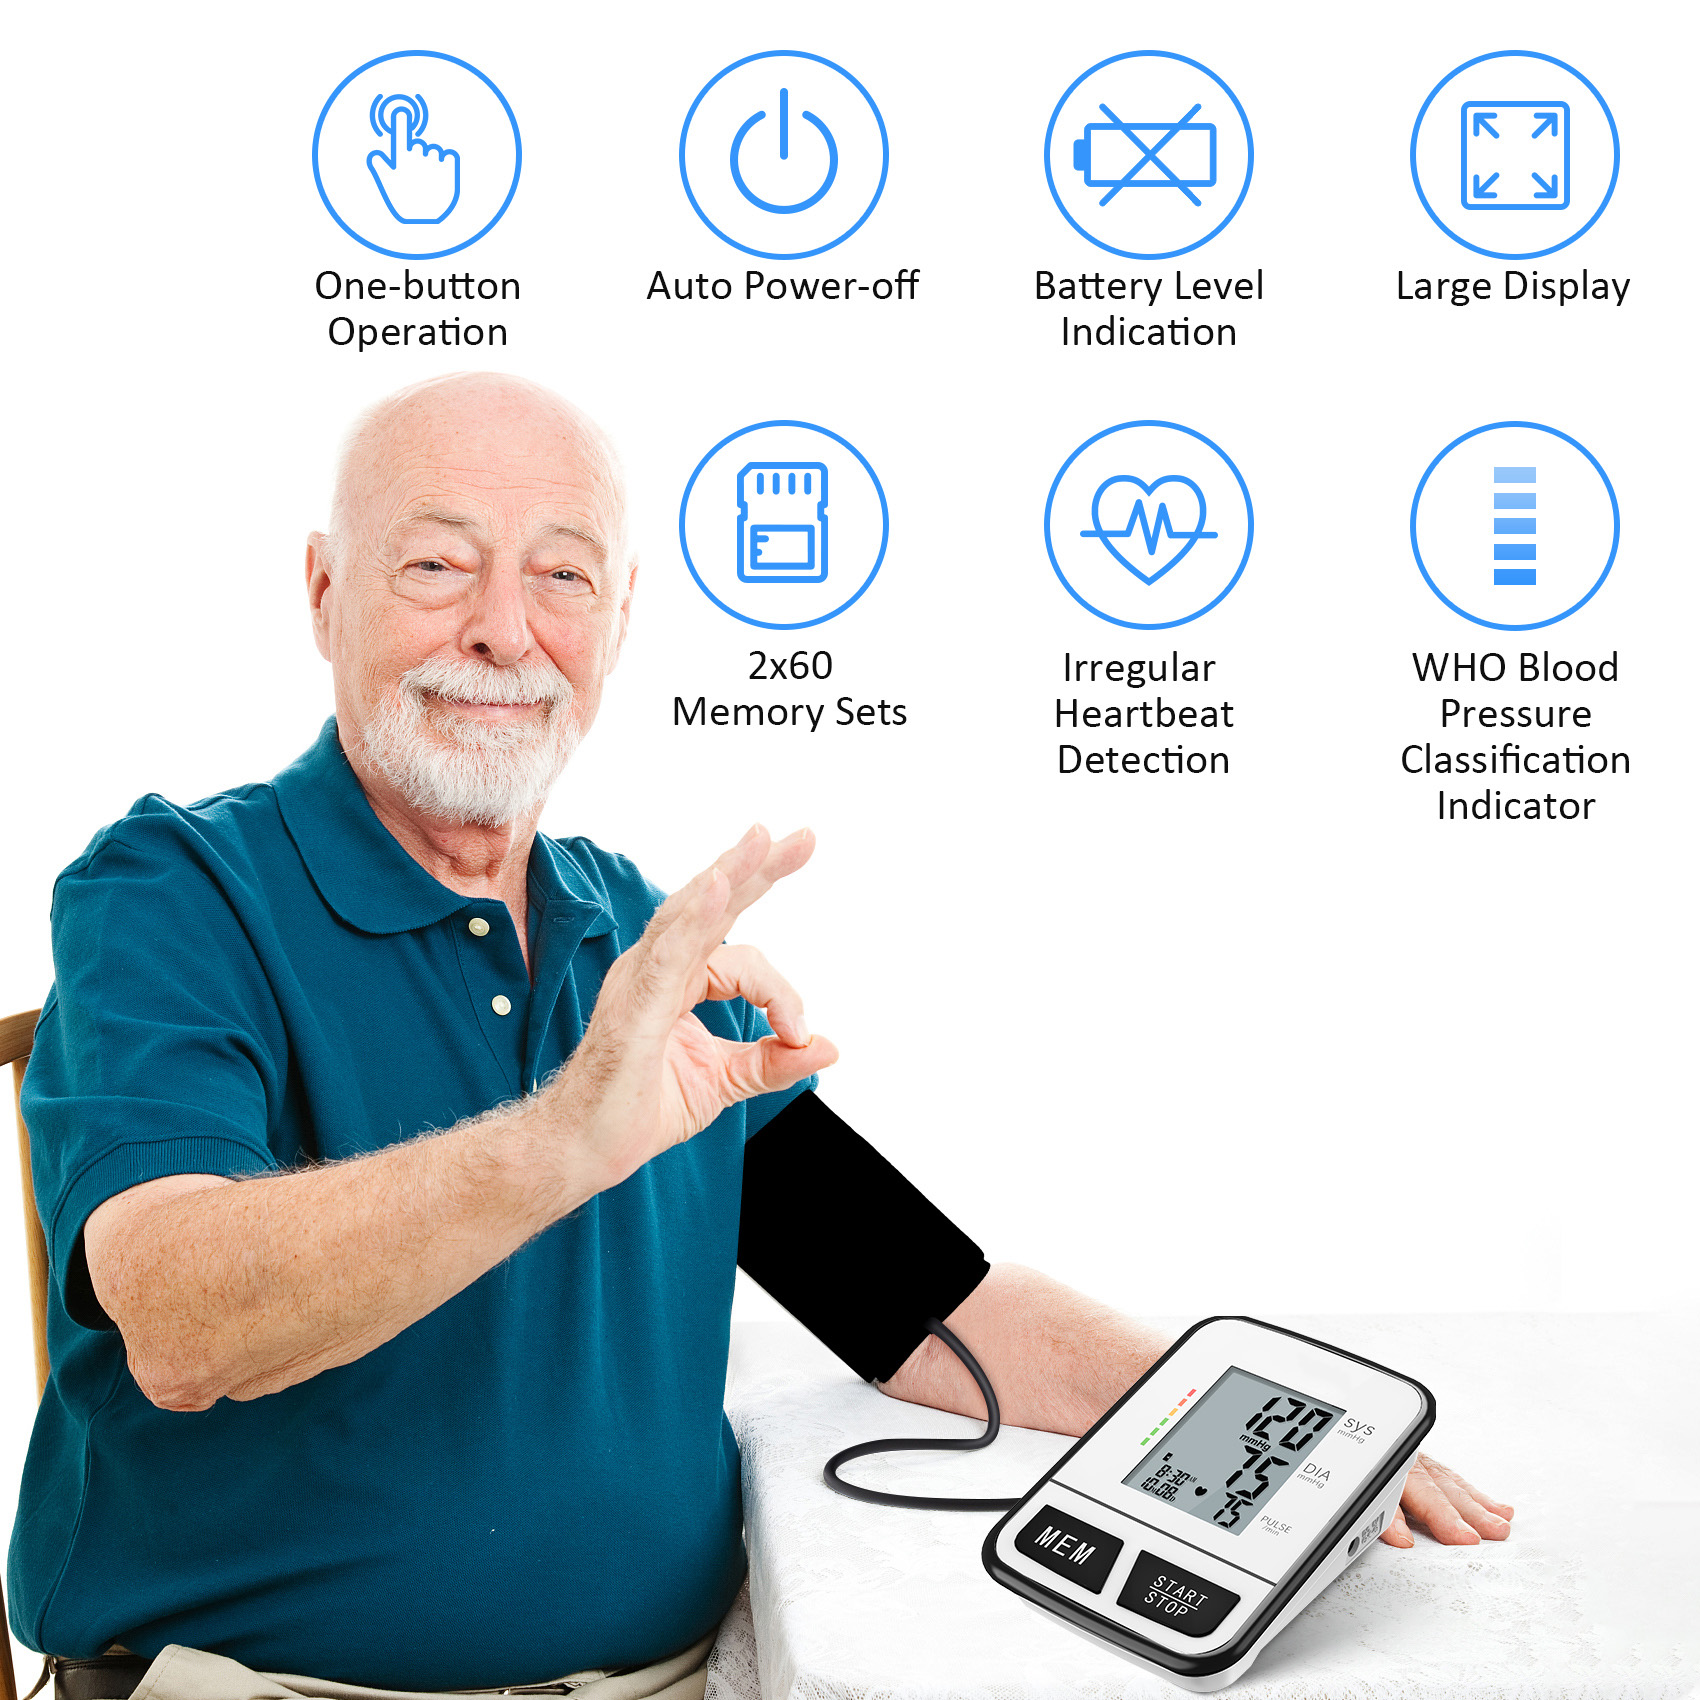 Prilagodite jezik Uređaj za provjeru visokog krvnog tlaka Bluetooth digitalni tenziometar